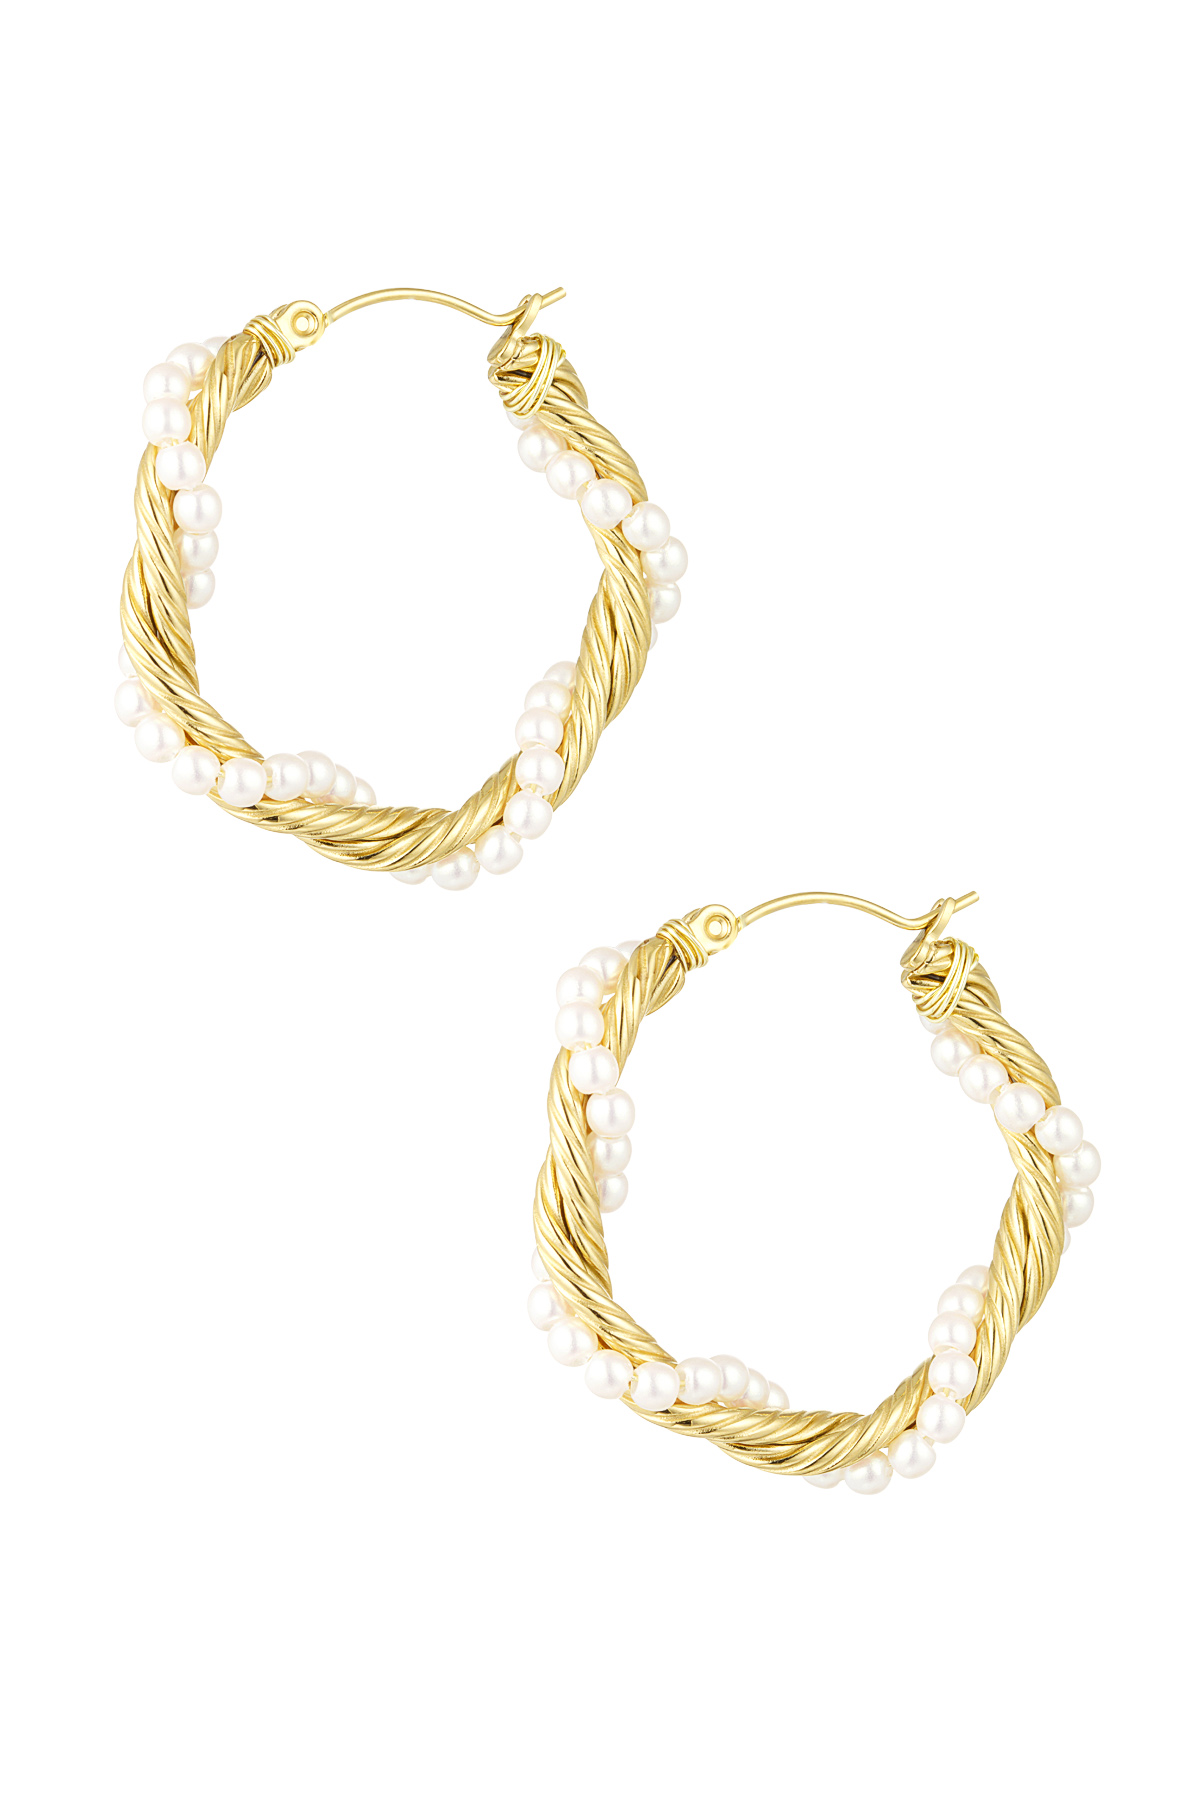 Boucles d'oreilles rondes corde torsadée avec perles - doré h5 